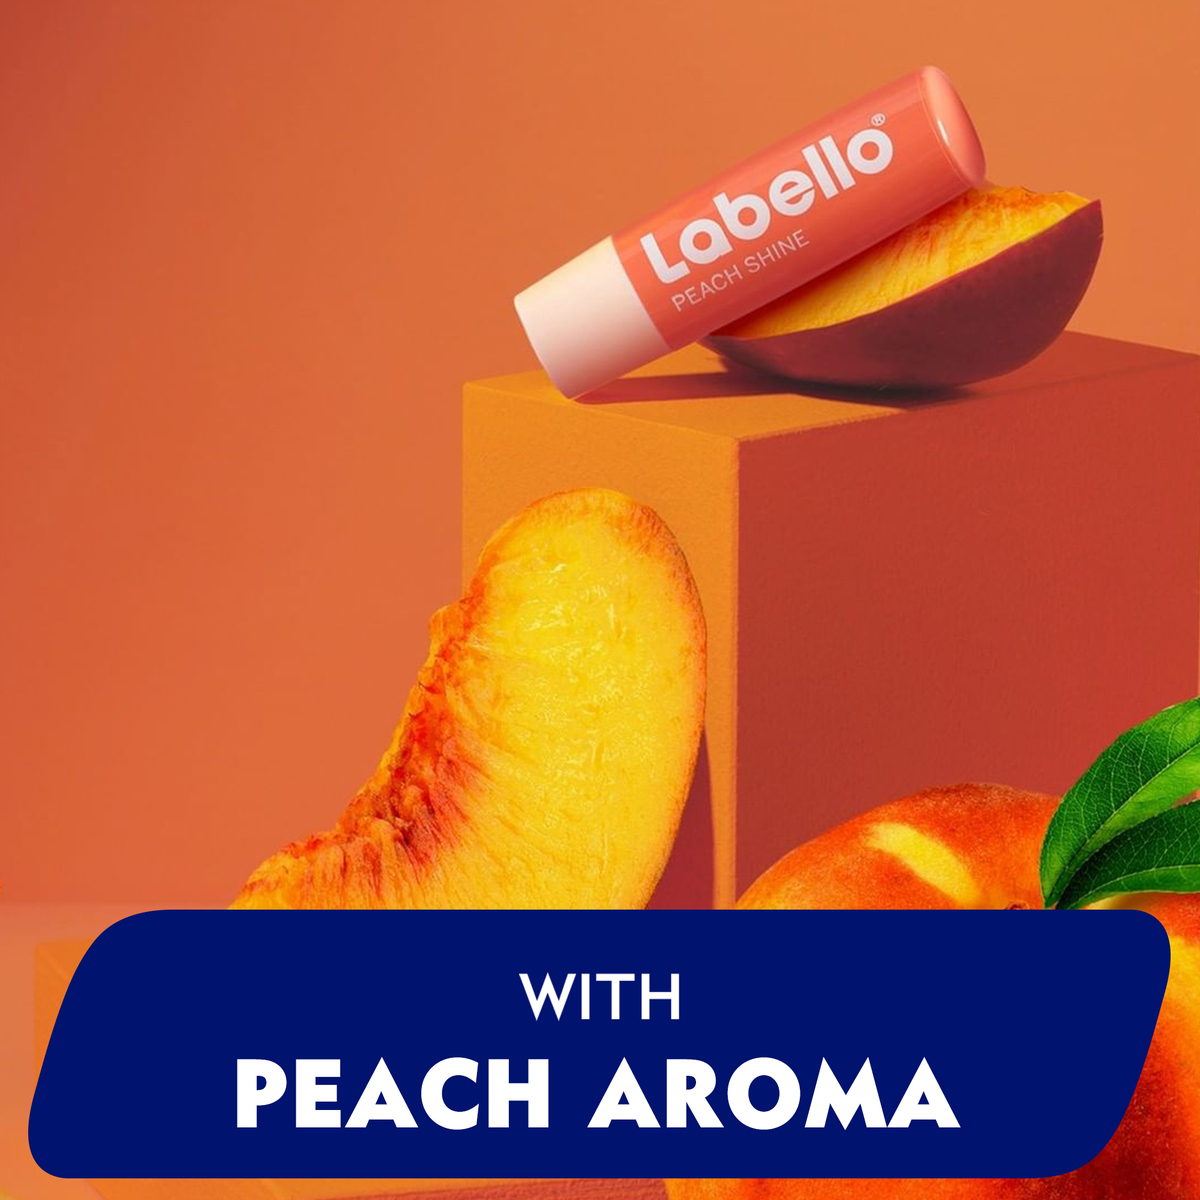 Labello Lip Balm Peach Shine 4.8 g